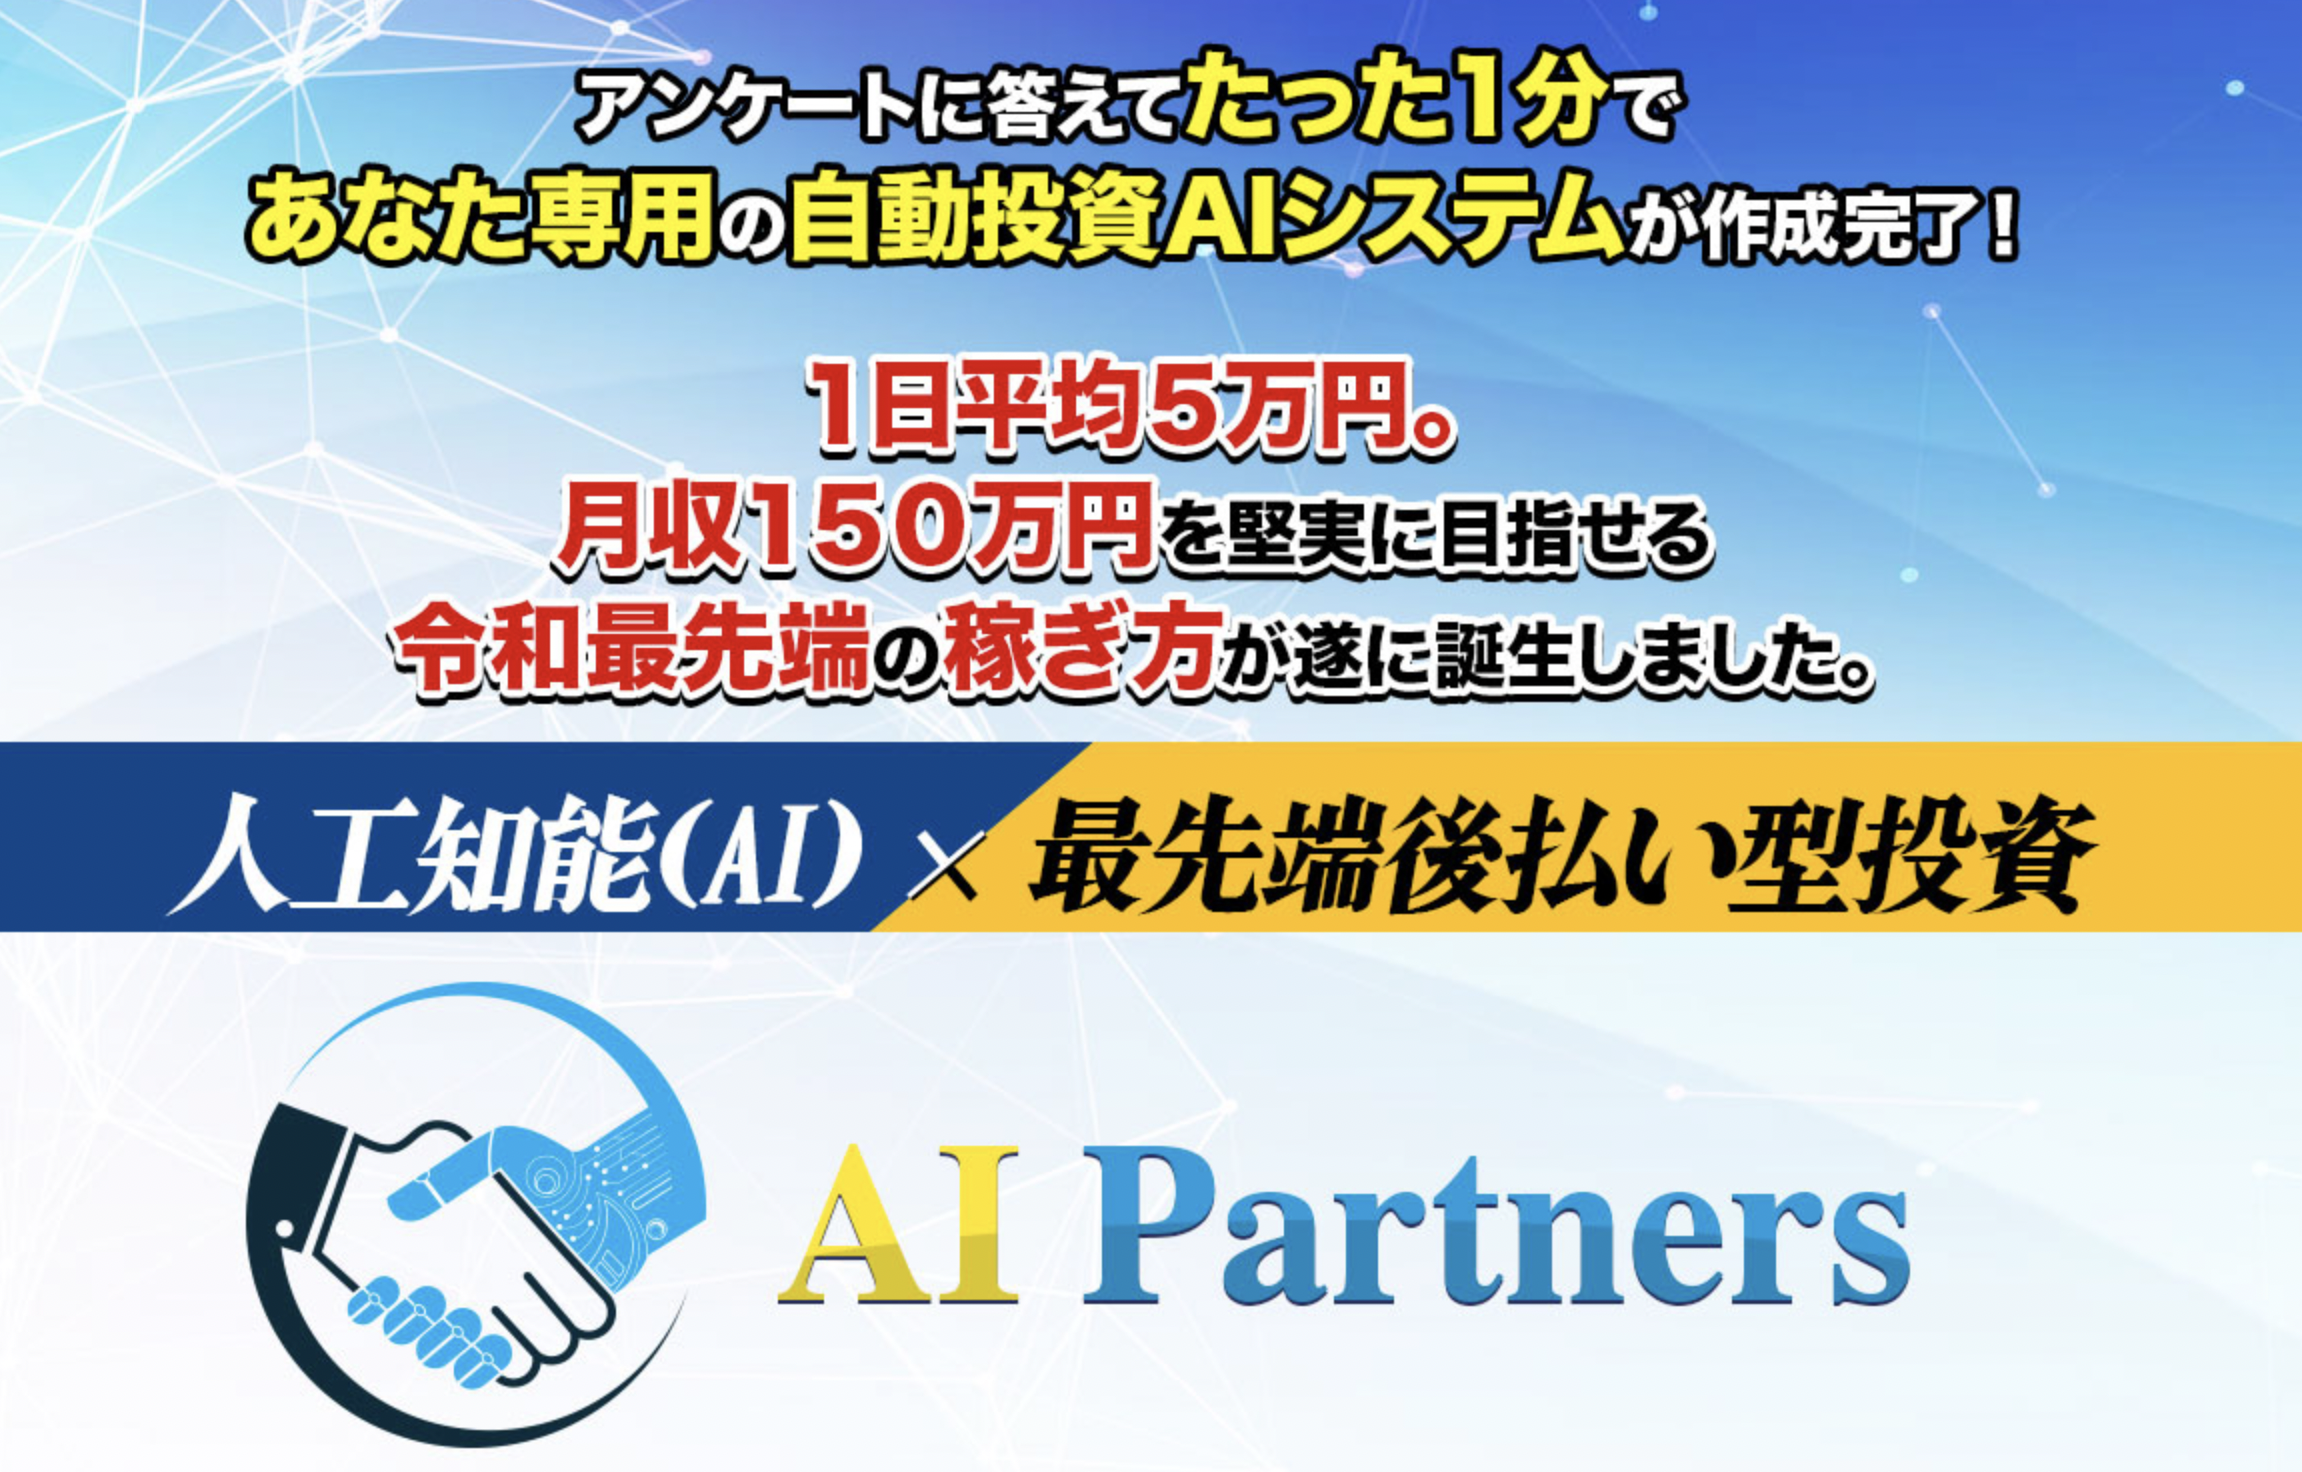 安藤優也のAI Partners（AIパートナーズ）は副業詐欺？評判と口コミは？1日平均5万円稼げるとかありえない